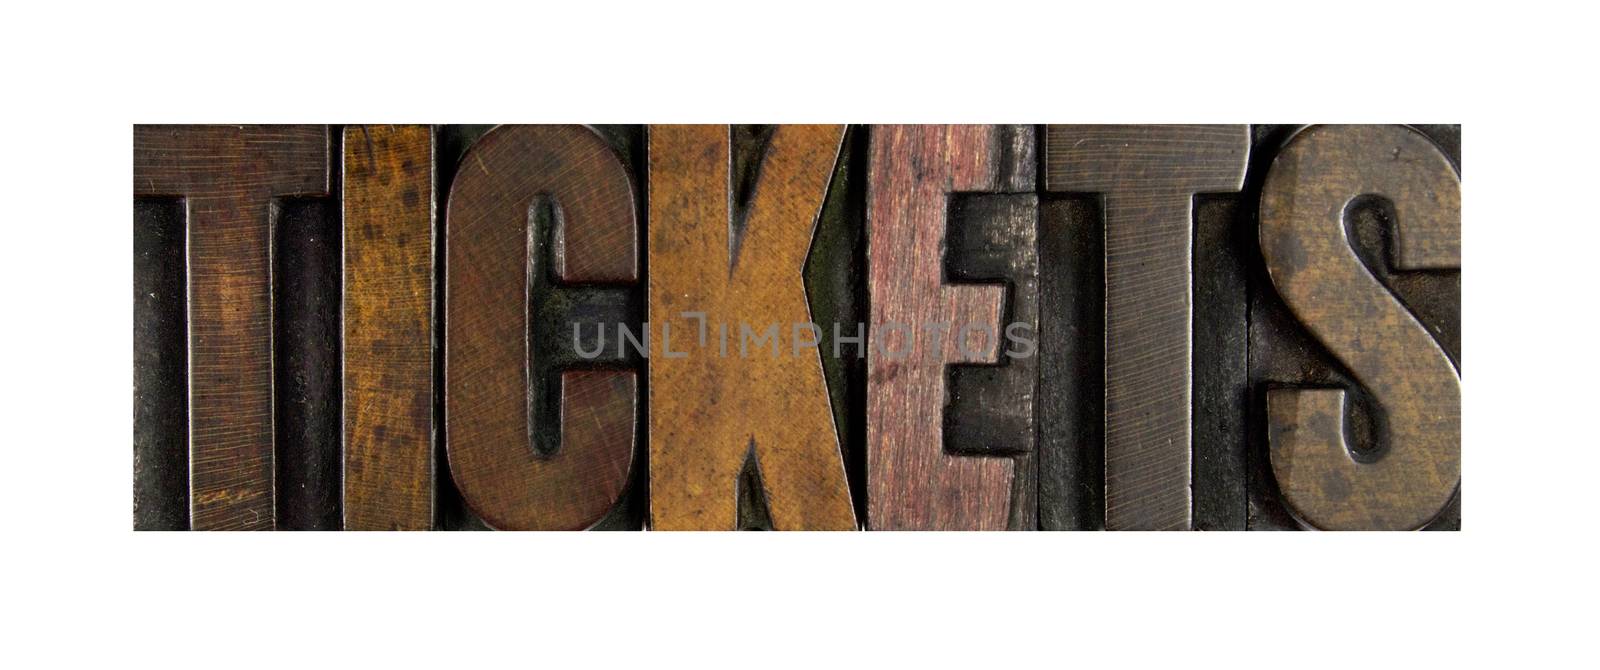 The word TICKETS written in vintage letterpress type